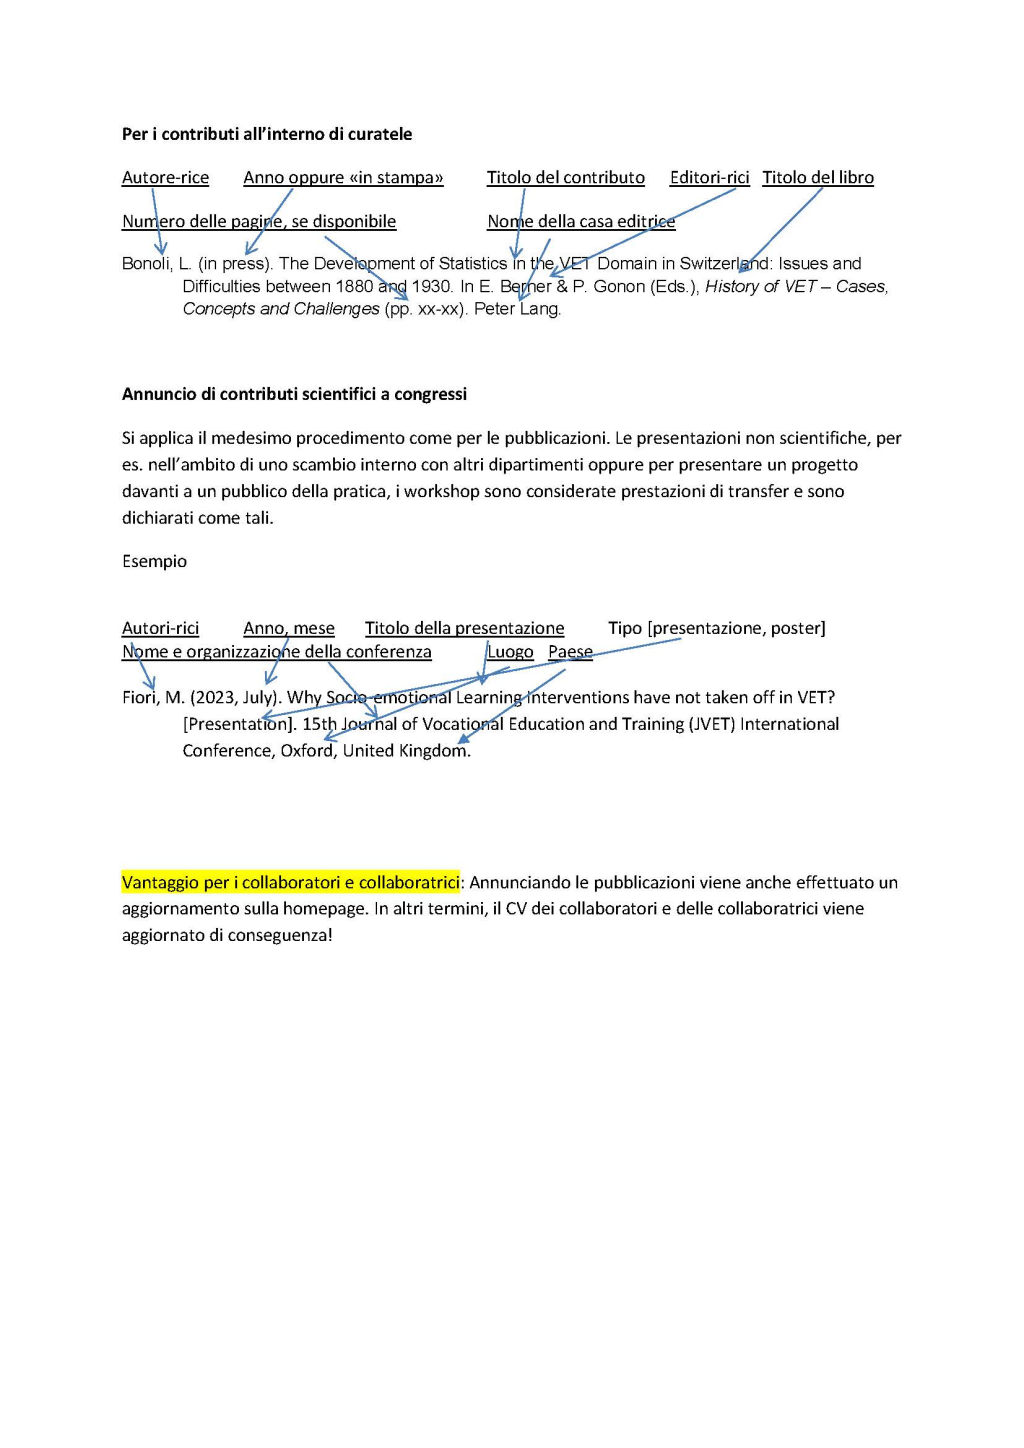 OA_Notificazione delle publicazioni e congressi (pagina 2)